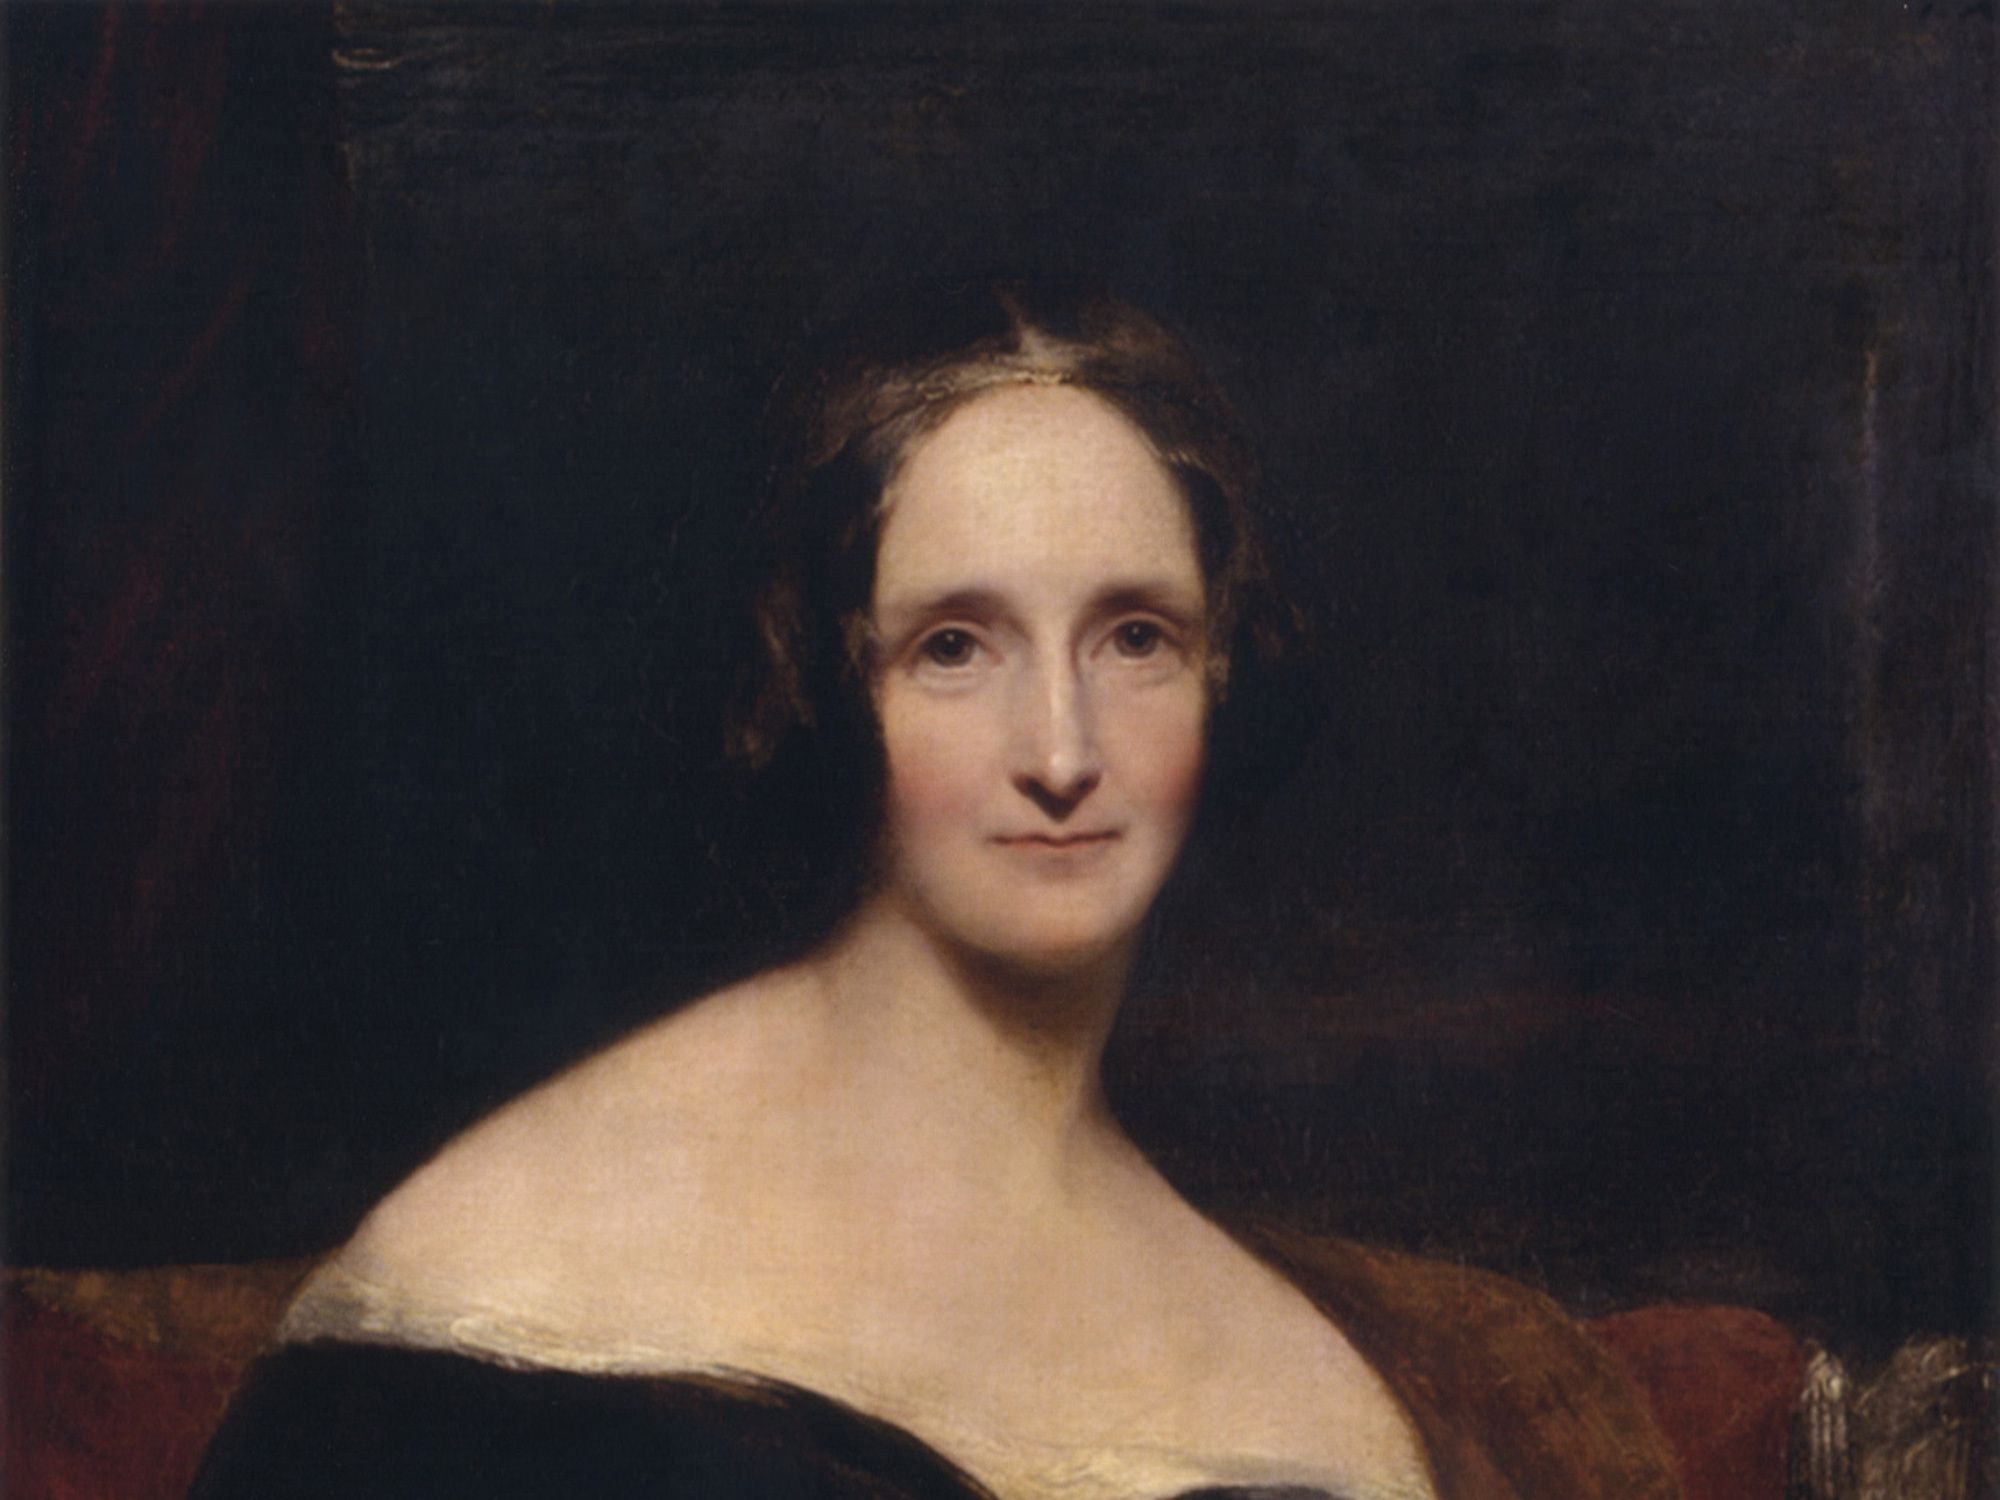 Depois de Einstein e Picasso, próxima temporada de ‘Genius’ será sobre Mary Shelley, autora de ‘Frankenstein’